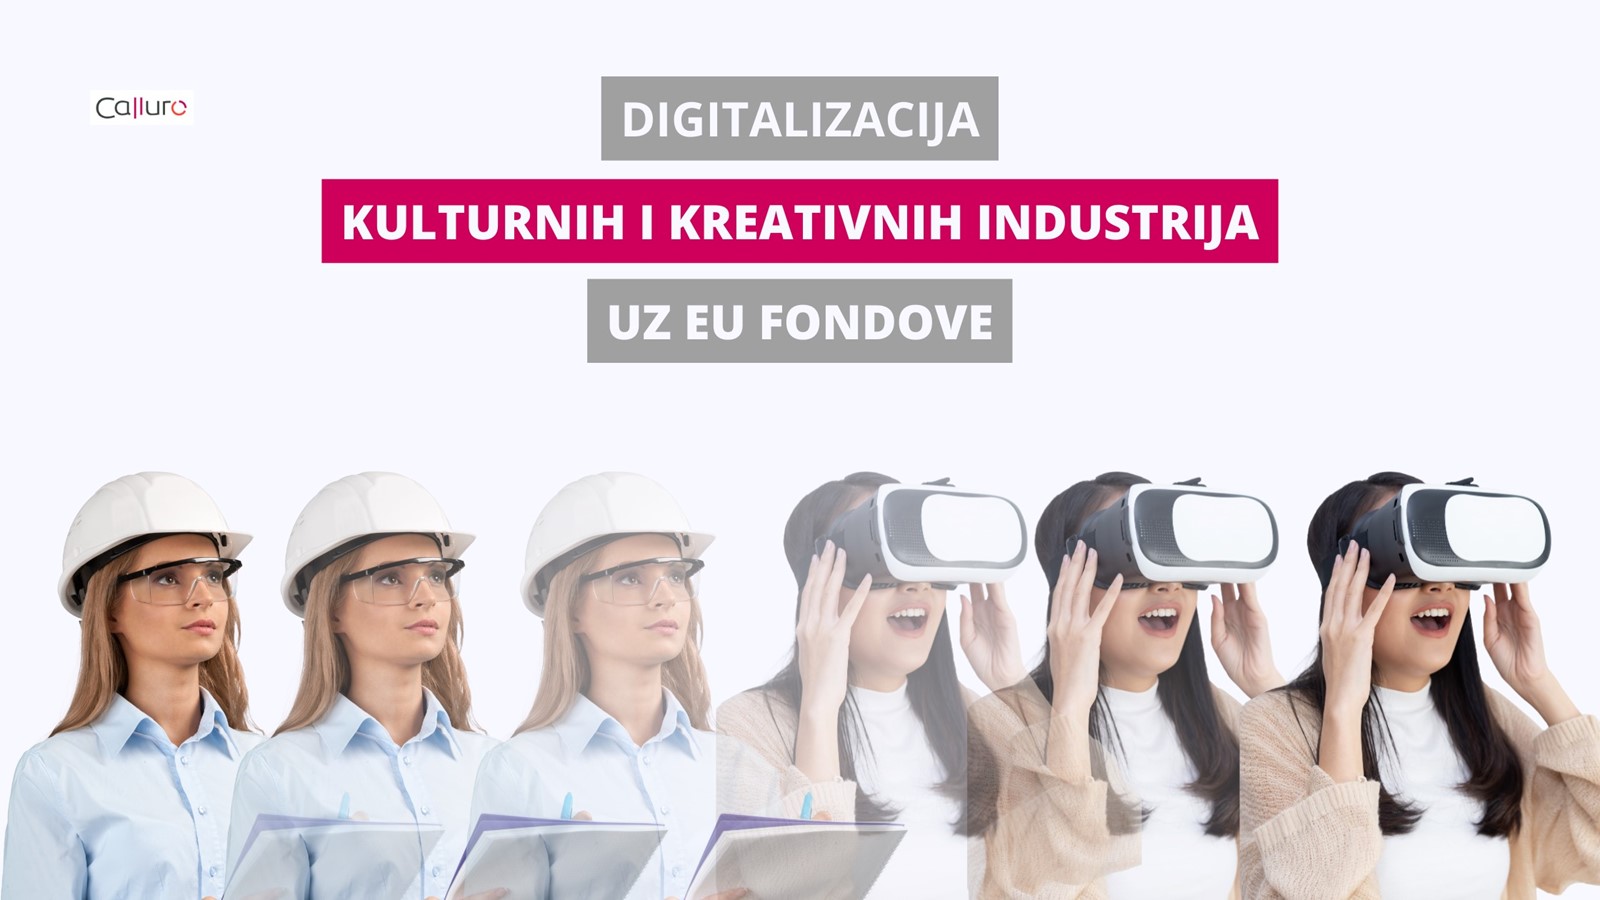 Digitalizacija kulturnih i kreativnih industrija uz EU fondove